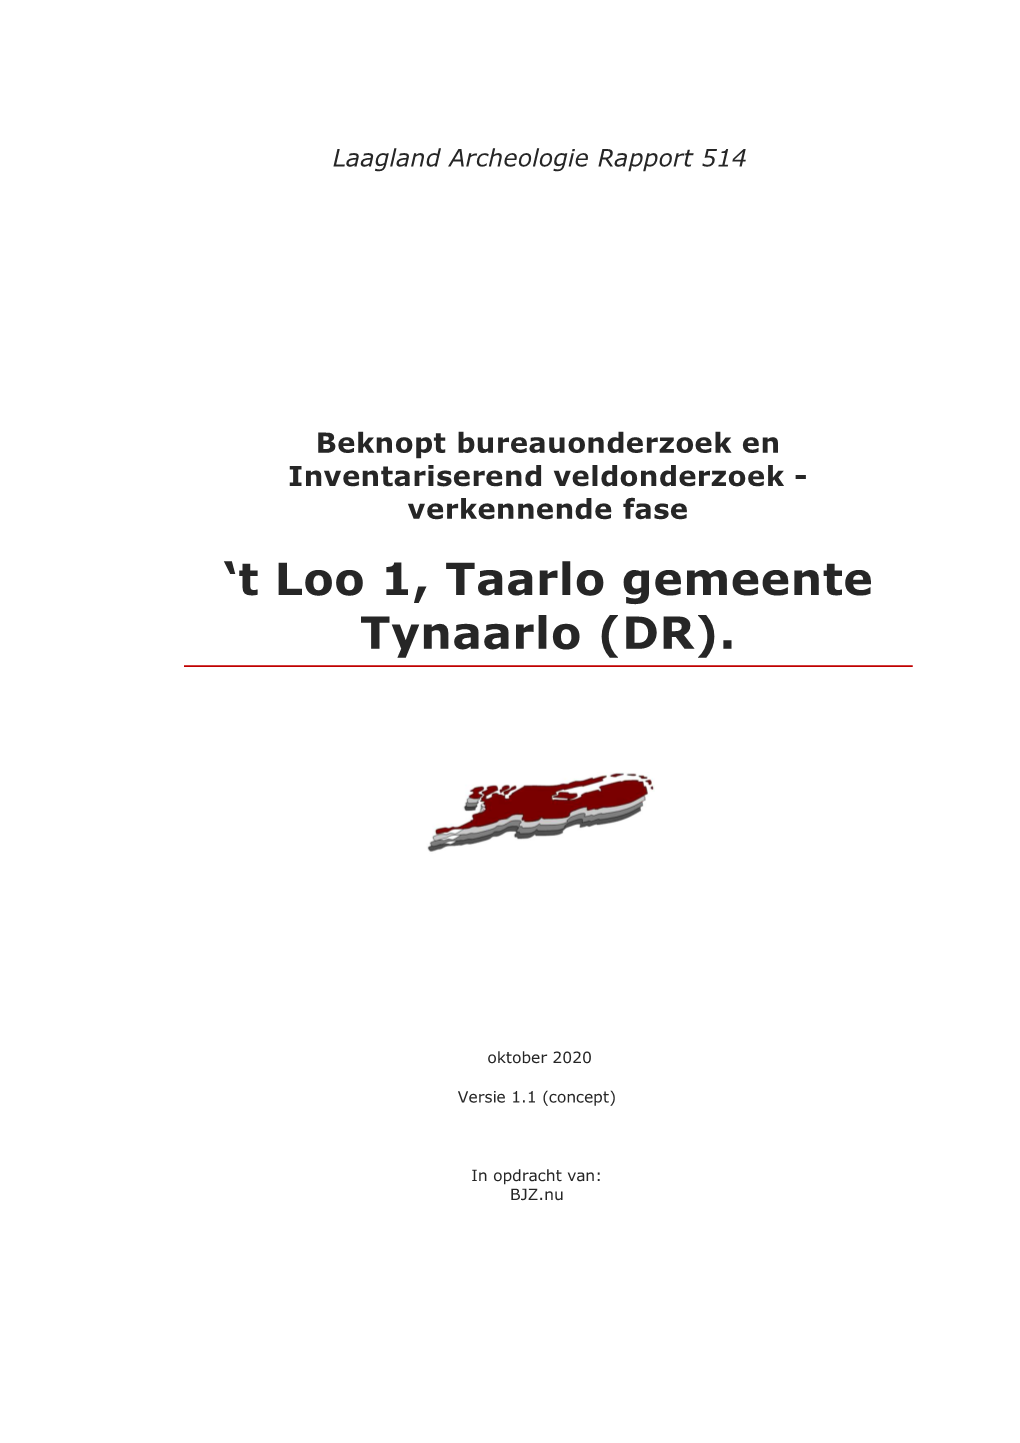 'T Loo 1, Taarlo Gemeente Tynaarlo (DR)